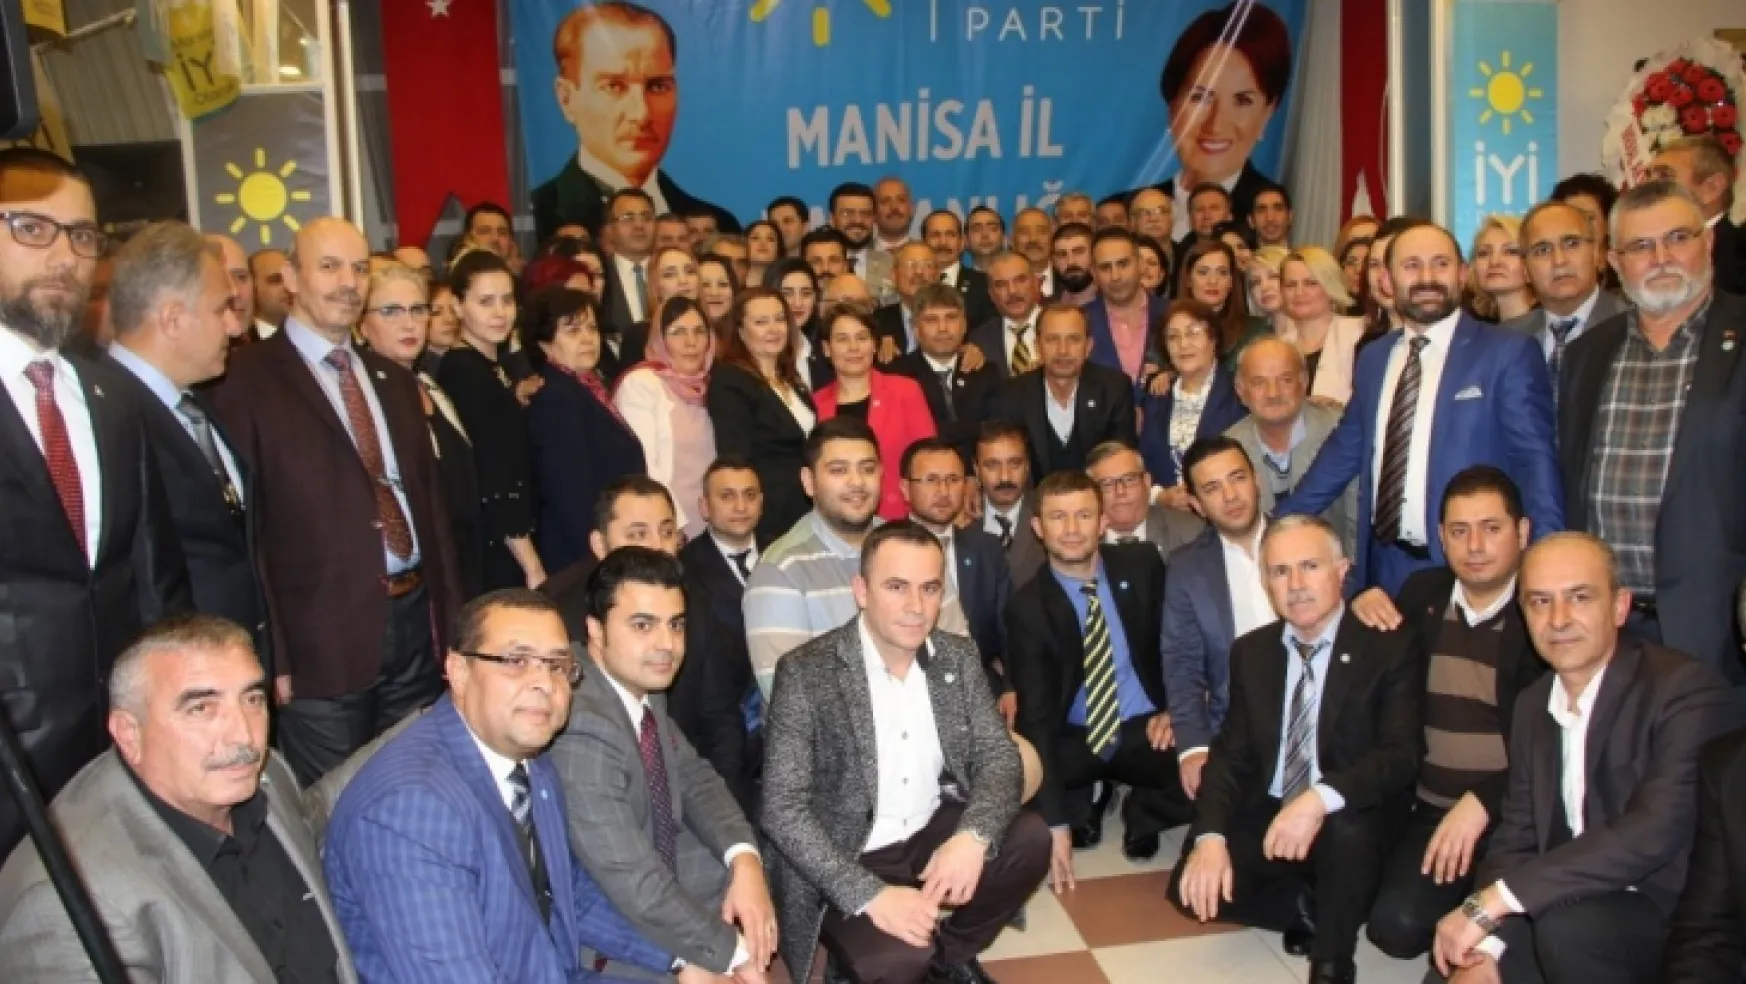 İYİ Parti Manisa il yönetimi ve ilçe başkanlarını basına tanıttı